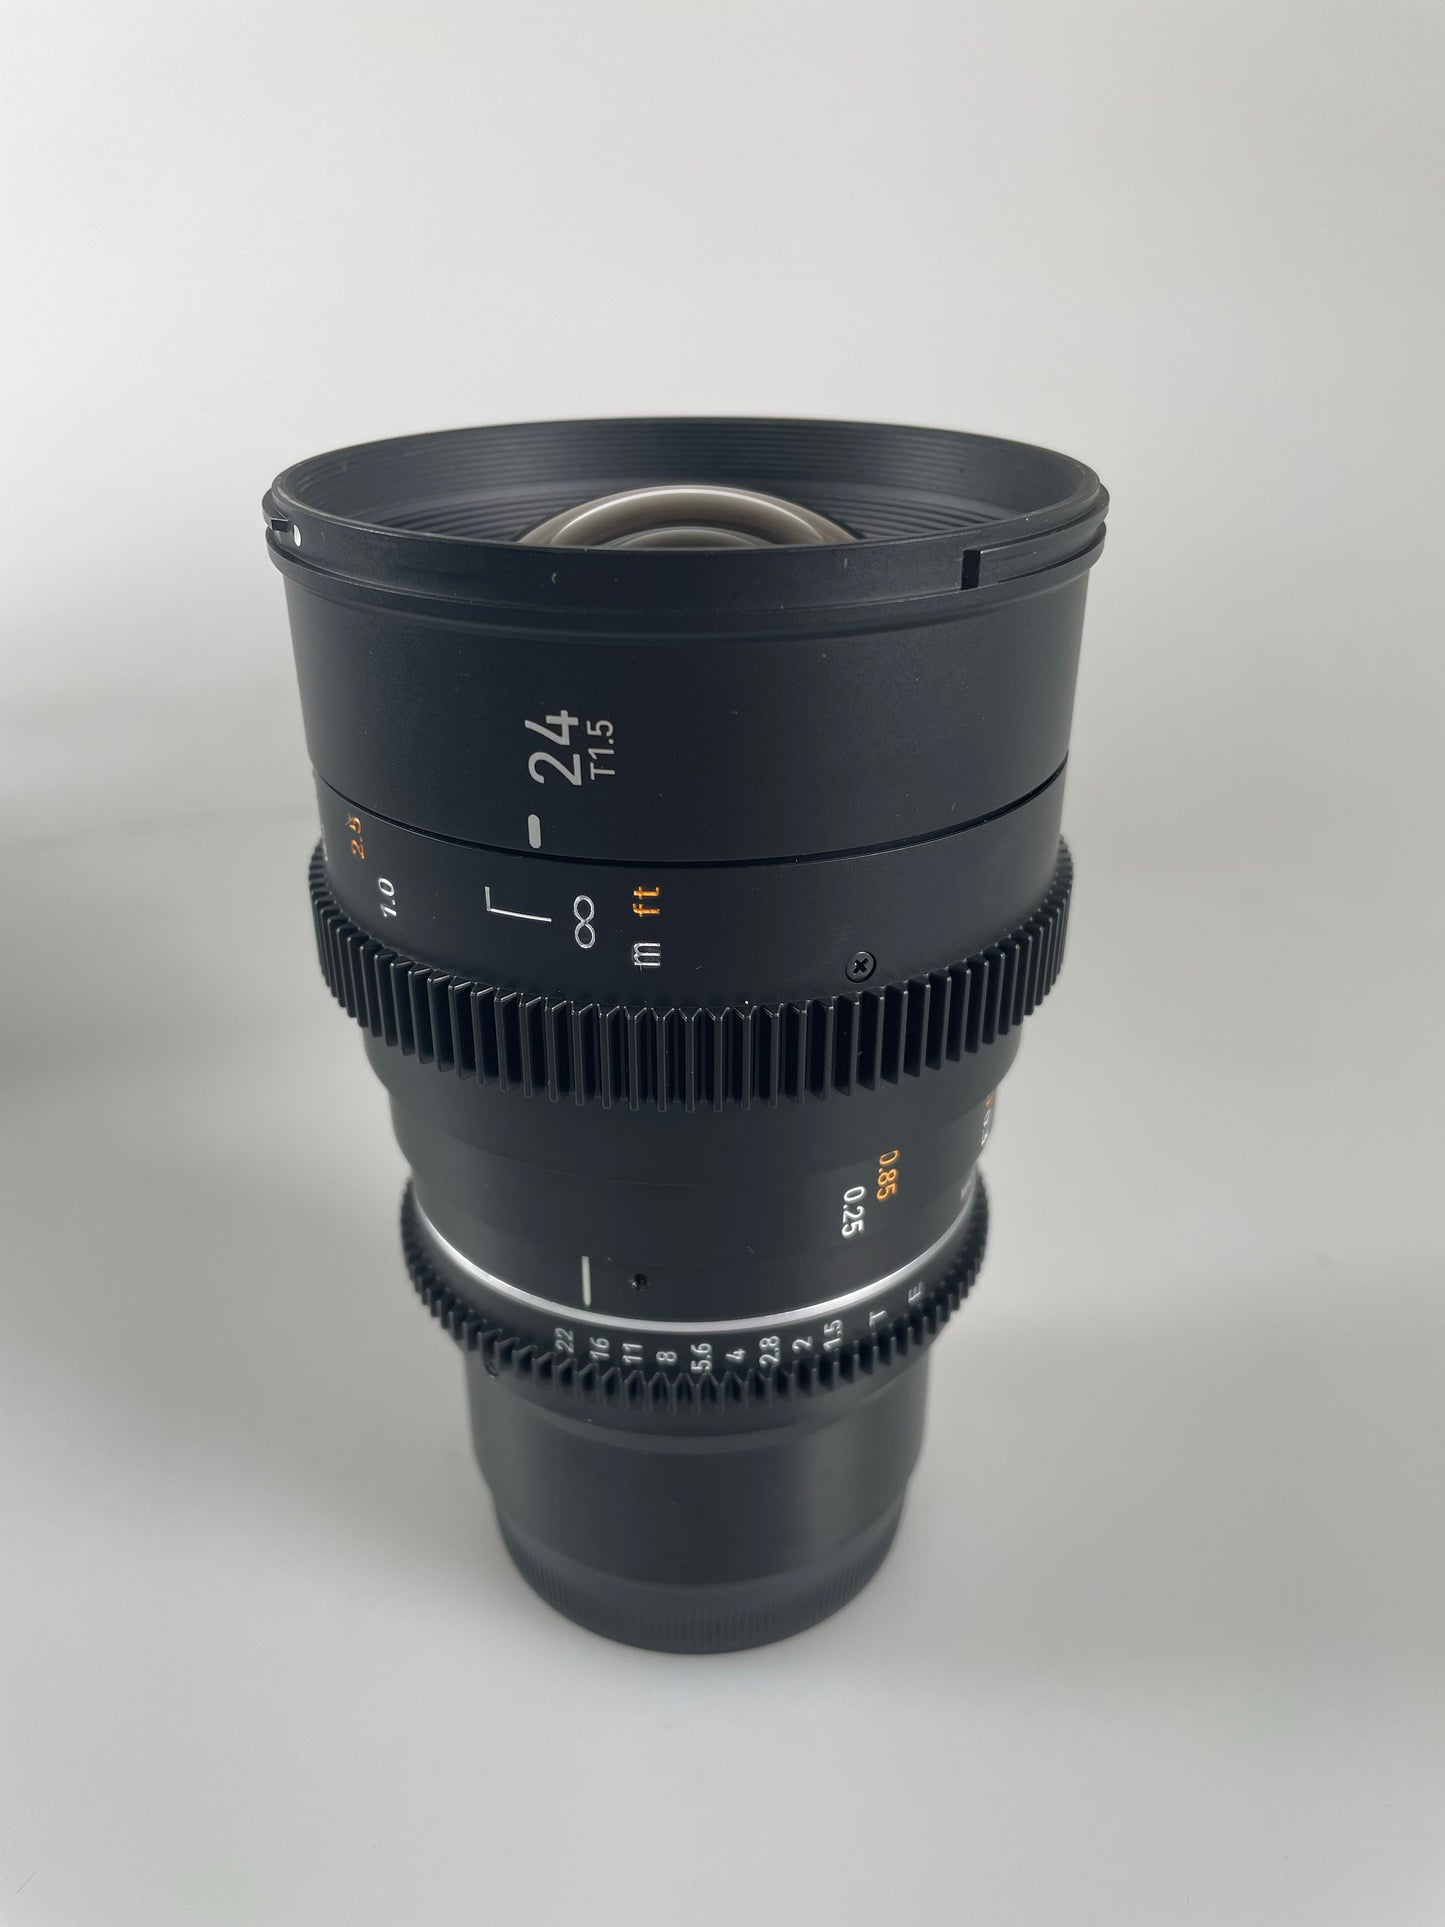 Samyang VDSLR II 24mm T1.5 Mark II MKII2 Cine Wide Angle Lens for Sony E Mount